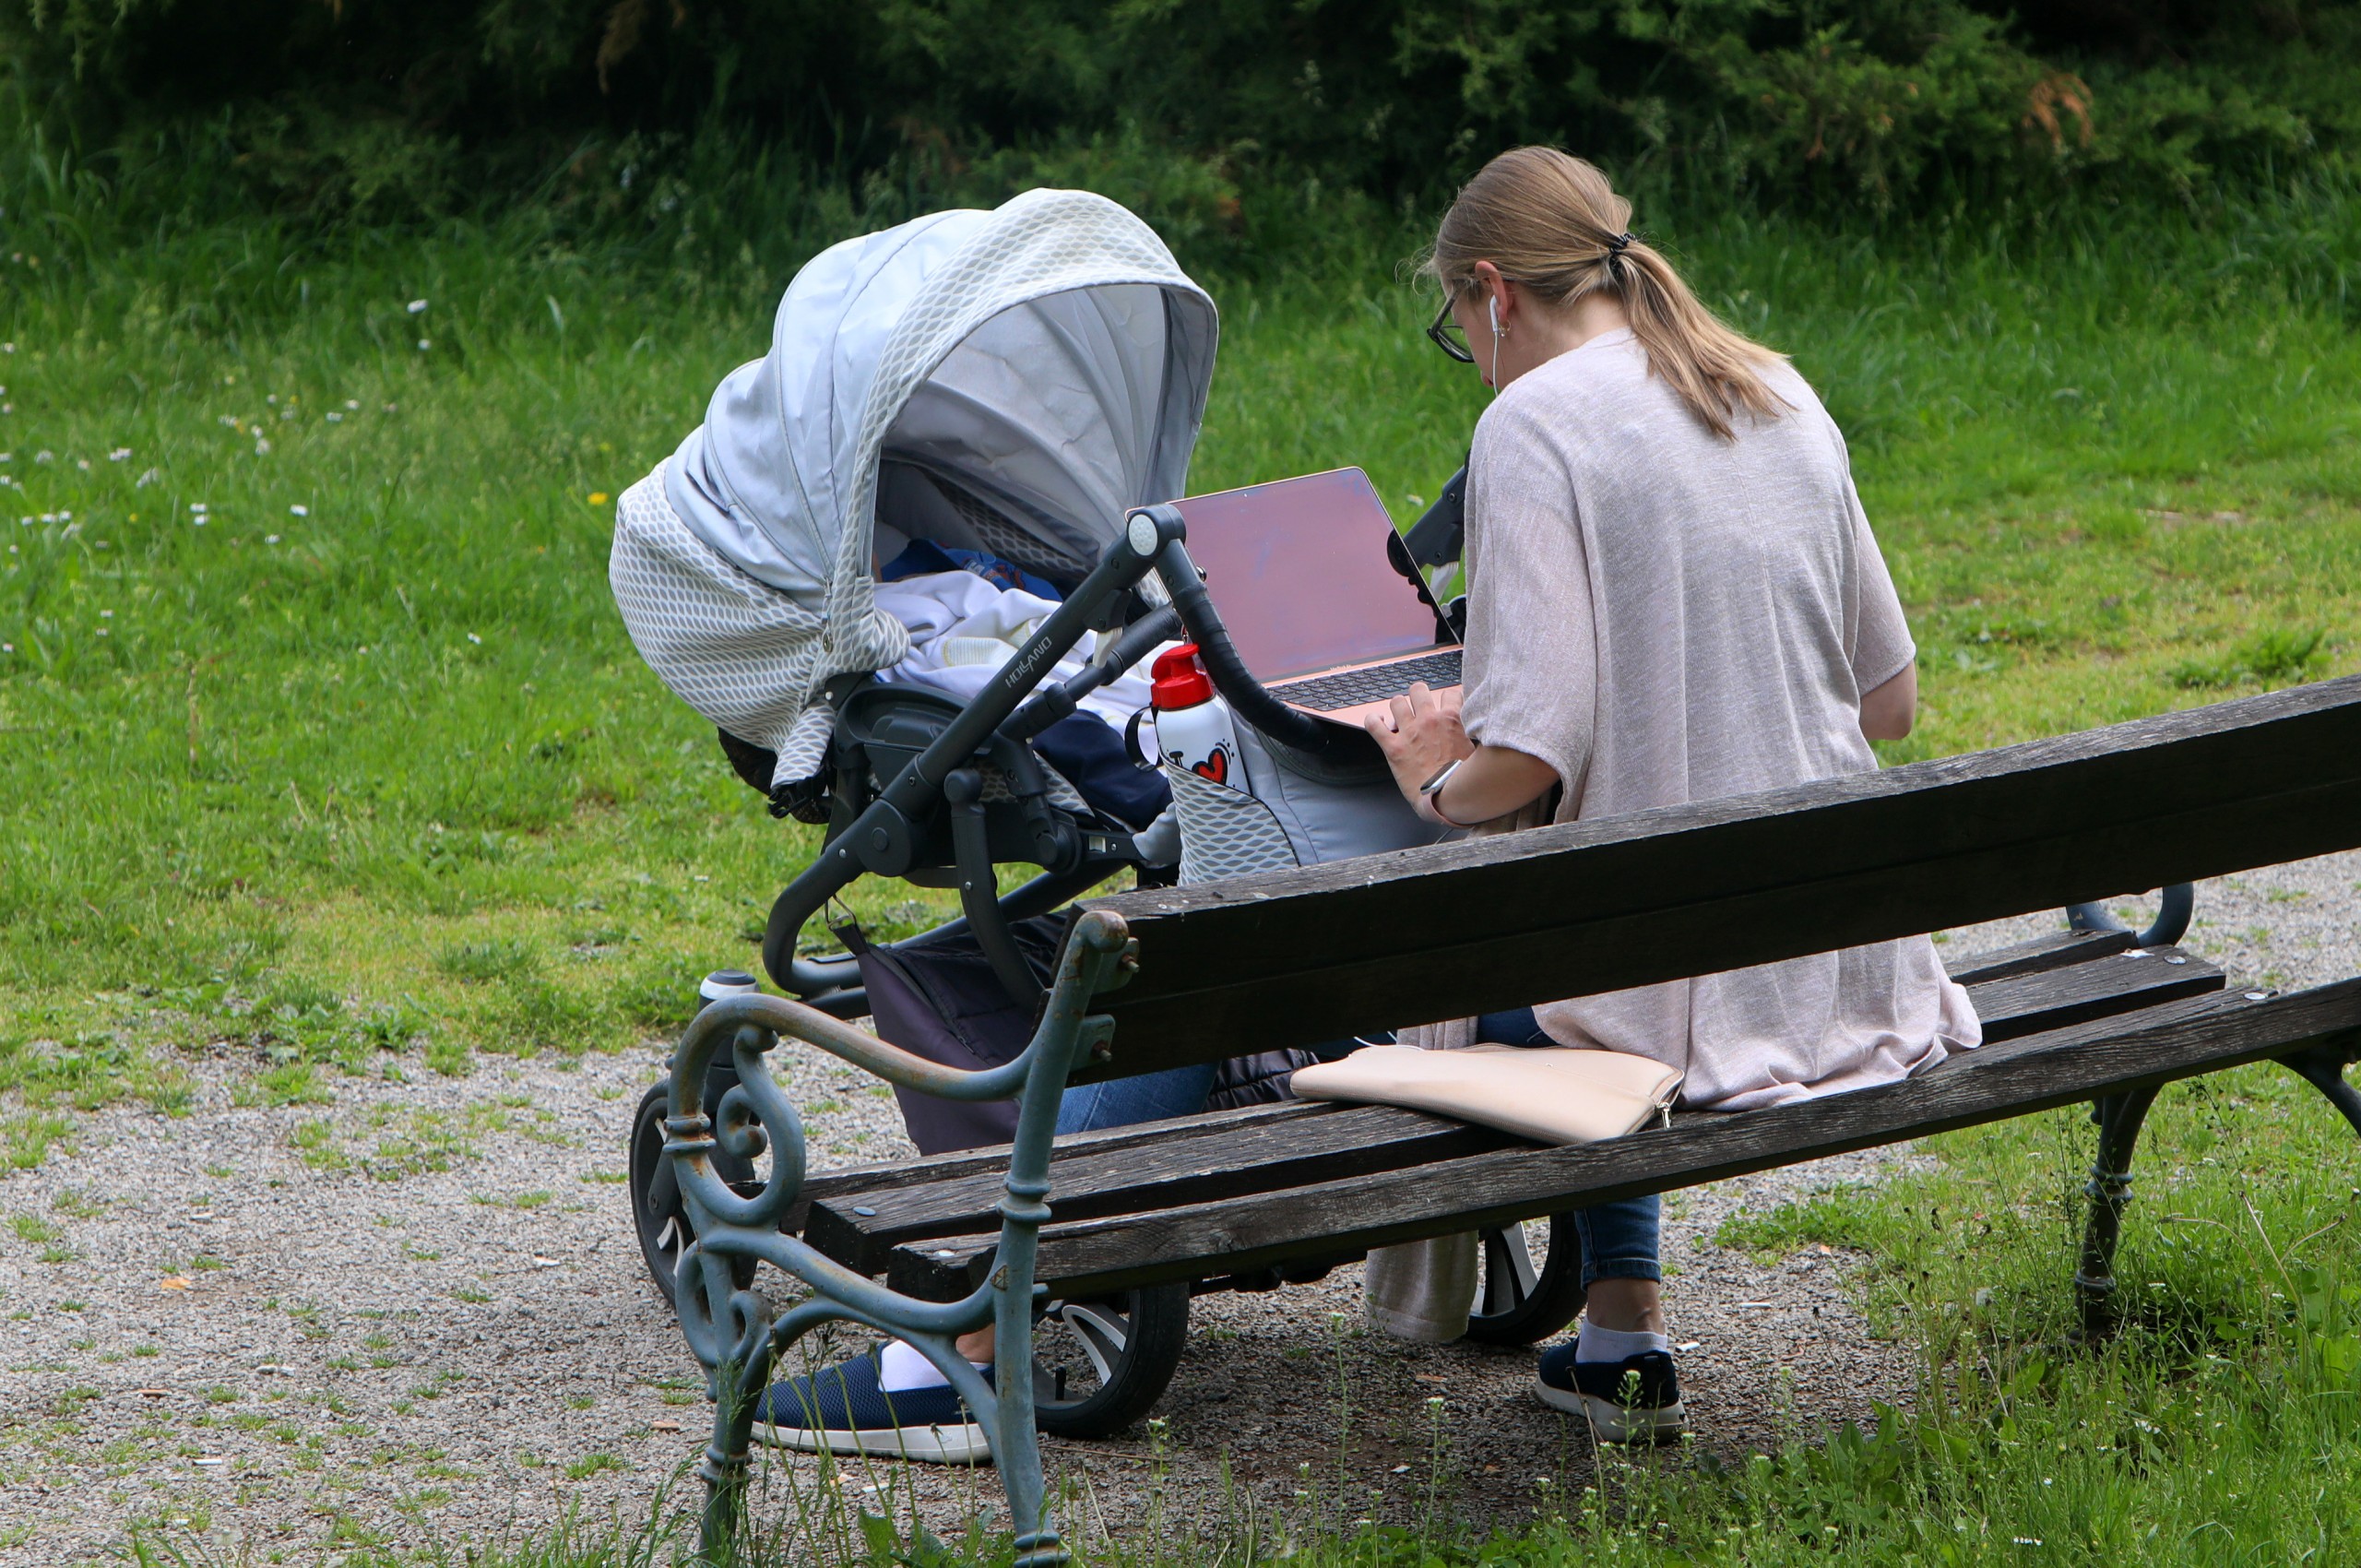 09.05.2022., Karlovac - Dok je beba bezbrizno spavala u kolicima mama rijesava neodgodive obaveze na laptopu.  Photo: Kristina Stedul Fabac/PIXSELL